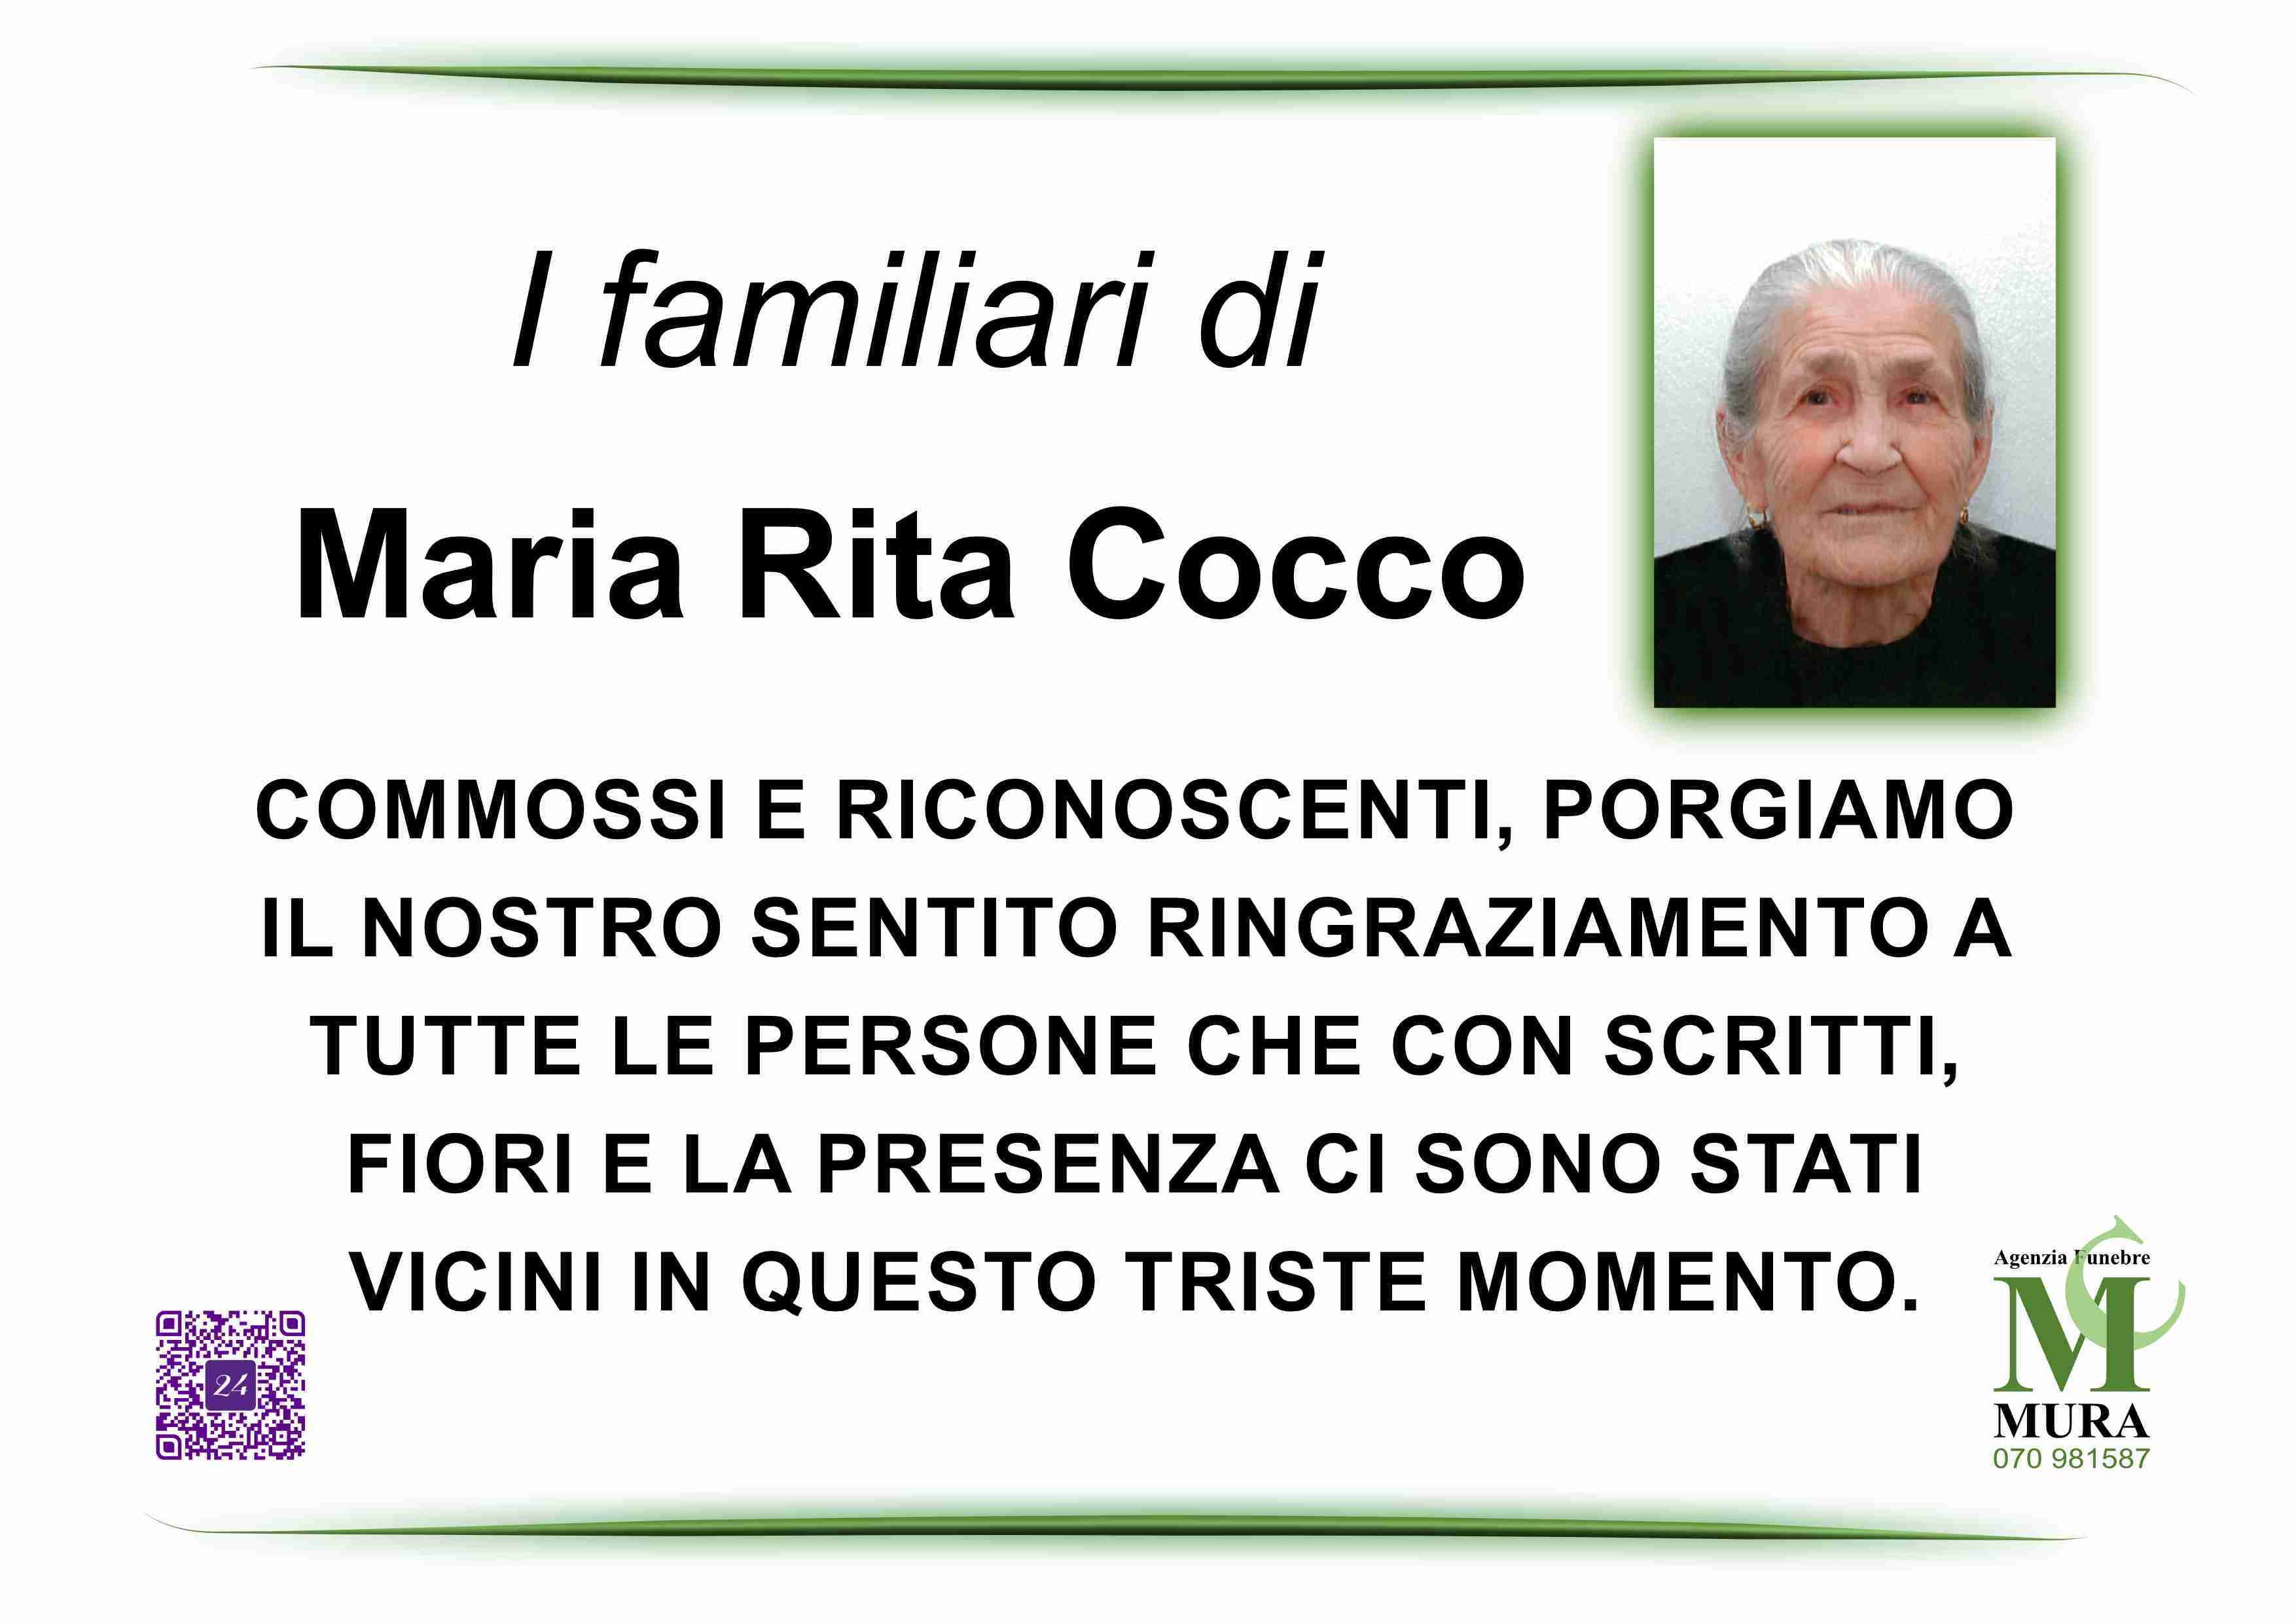 Maria Rita Cocco